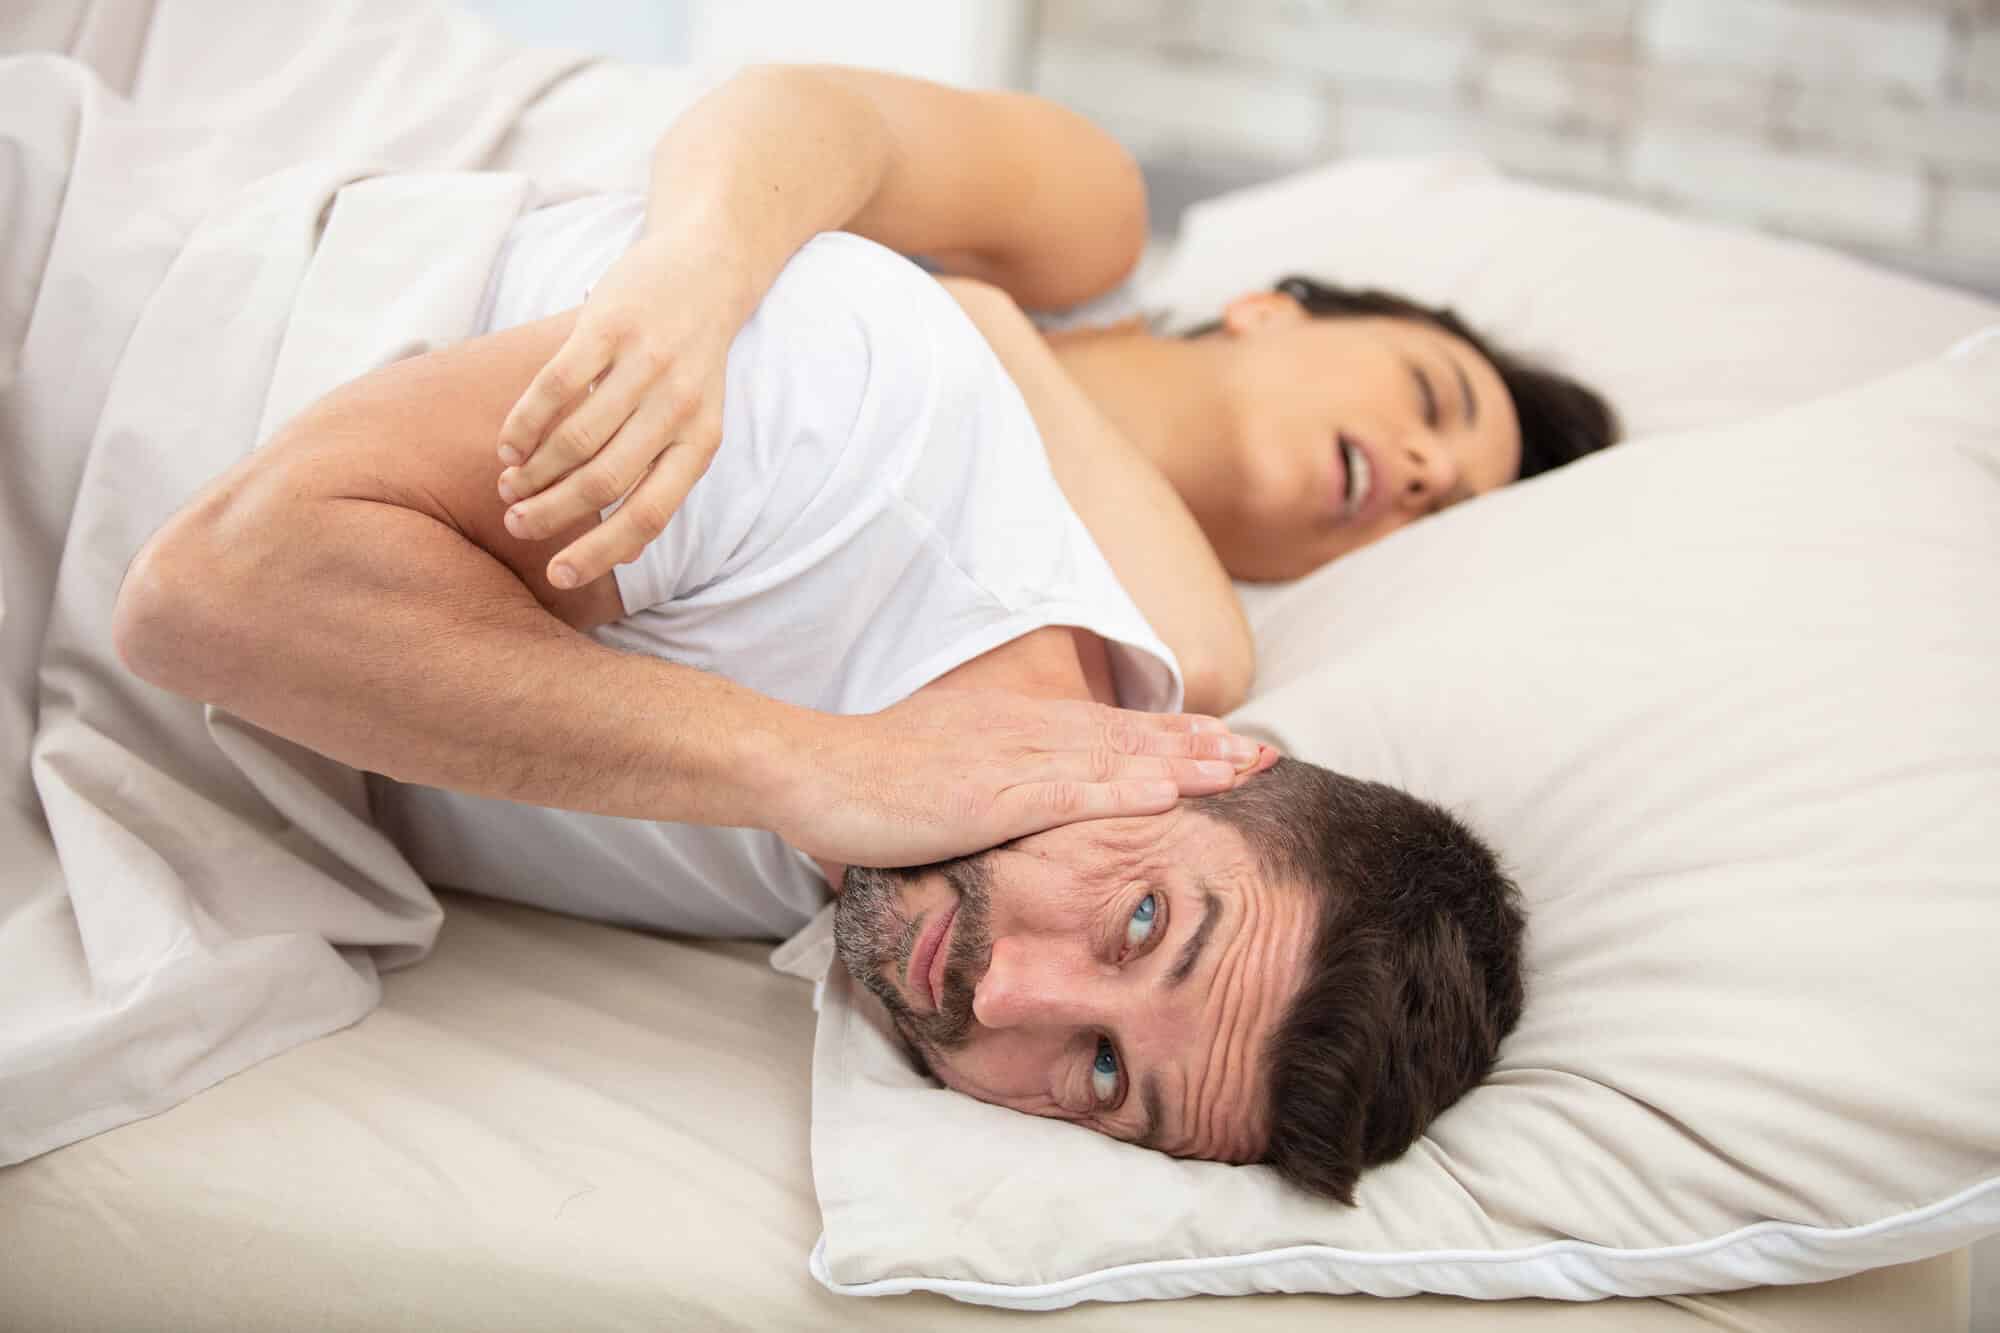 נשים הנוחרות בשינה מסתכנות בדום נשימה.  <a href="https://depositphotos.com. ">המחשה: depositphotos.com</a>